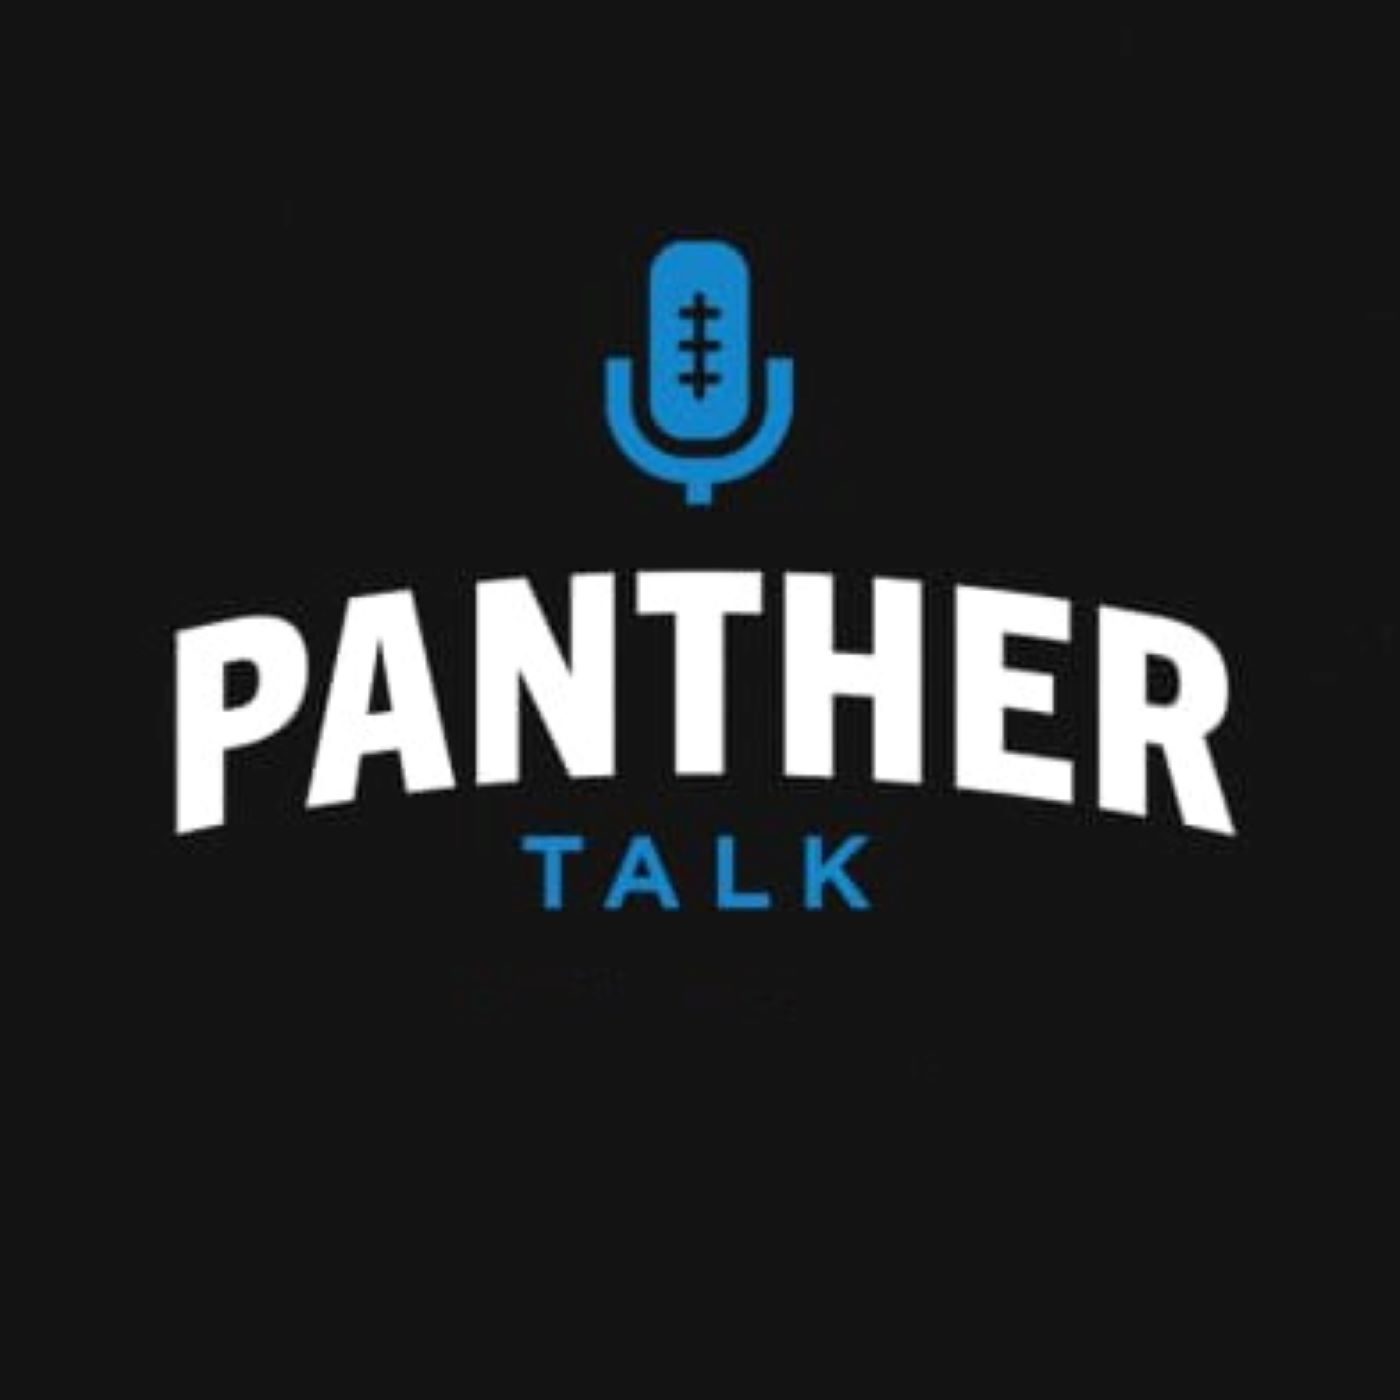 Panther Talk (October 23)